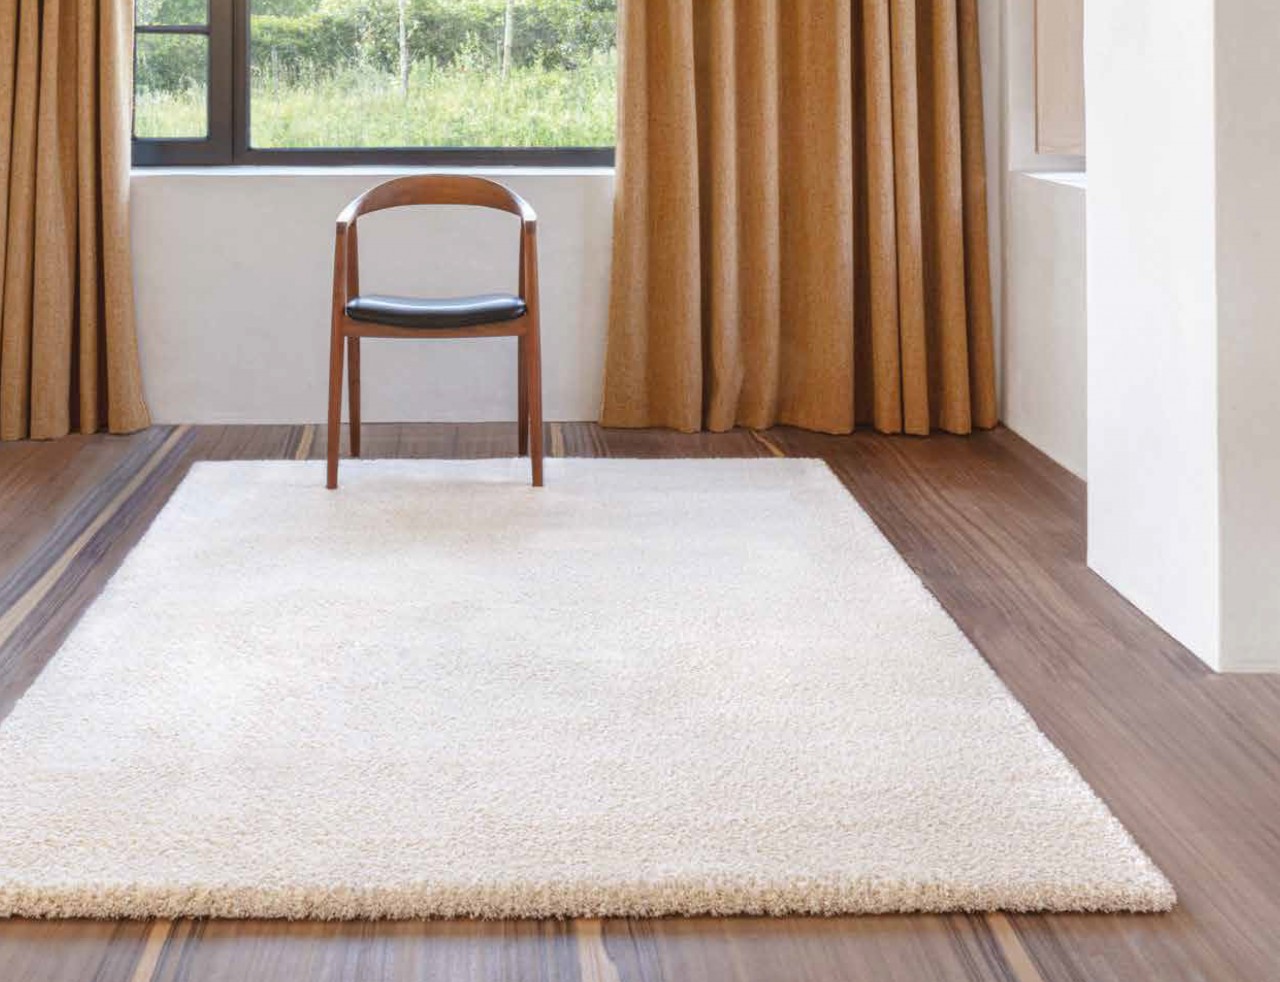 Um ambiente moderno e acolhedor com o tapete Husk a elegância do design minimalista para a sua casa!